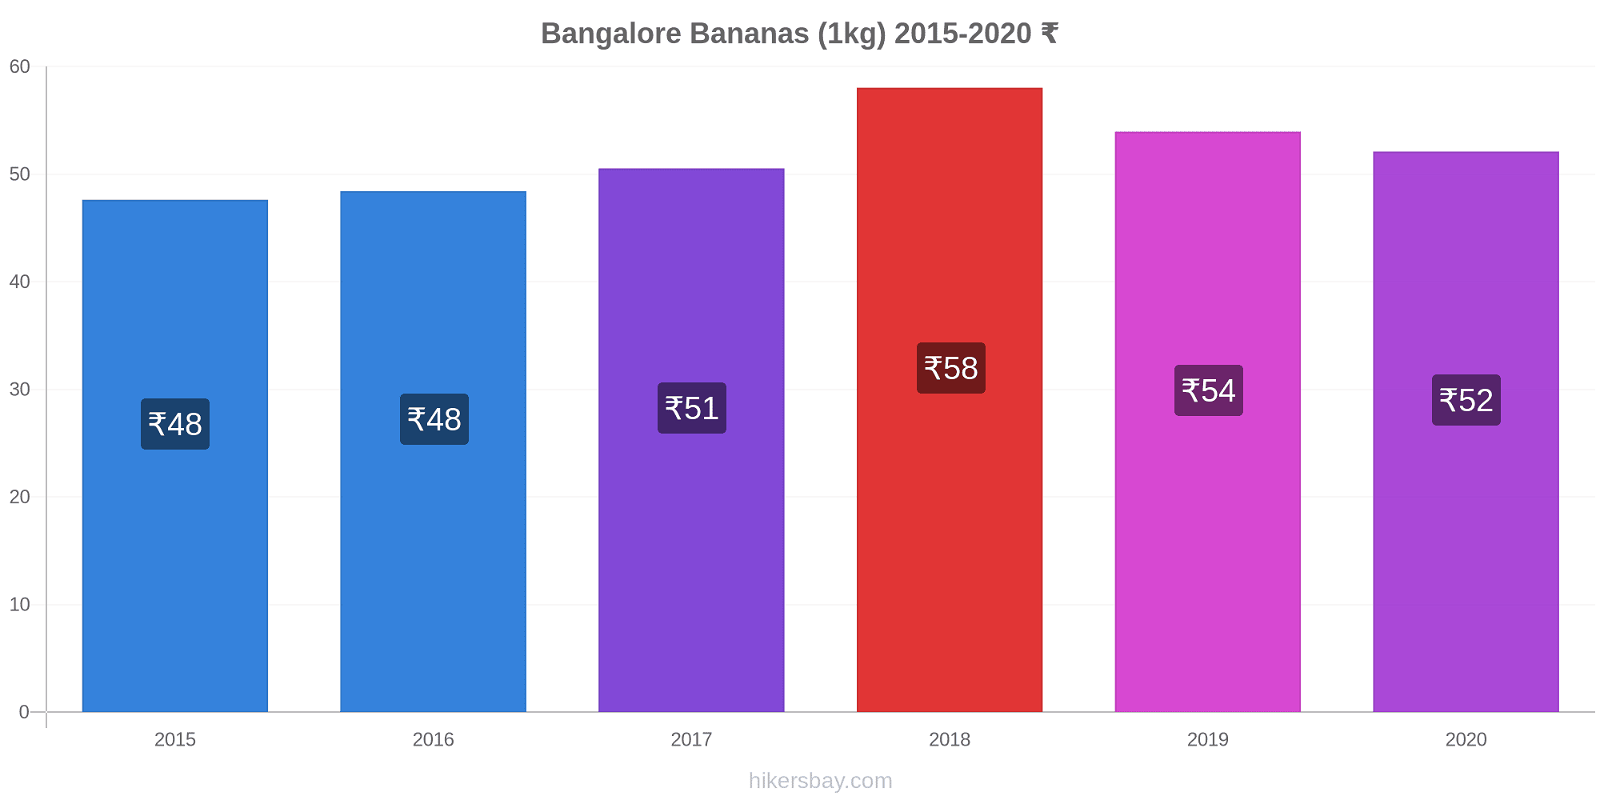 Bangalore variação de preço Banana (1kg) hikersbay.com